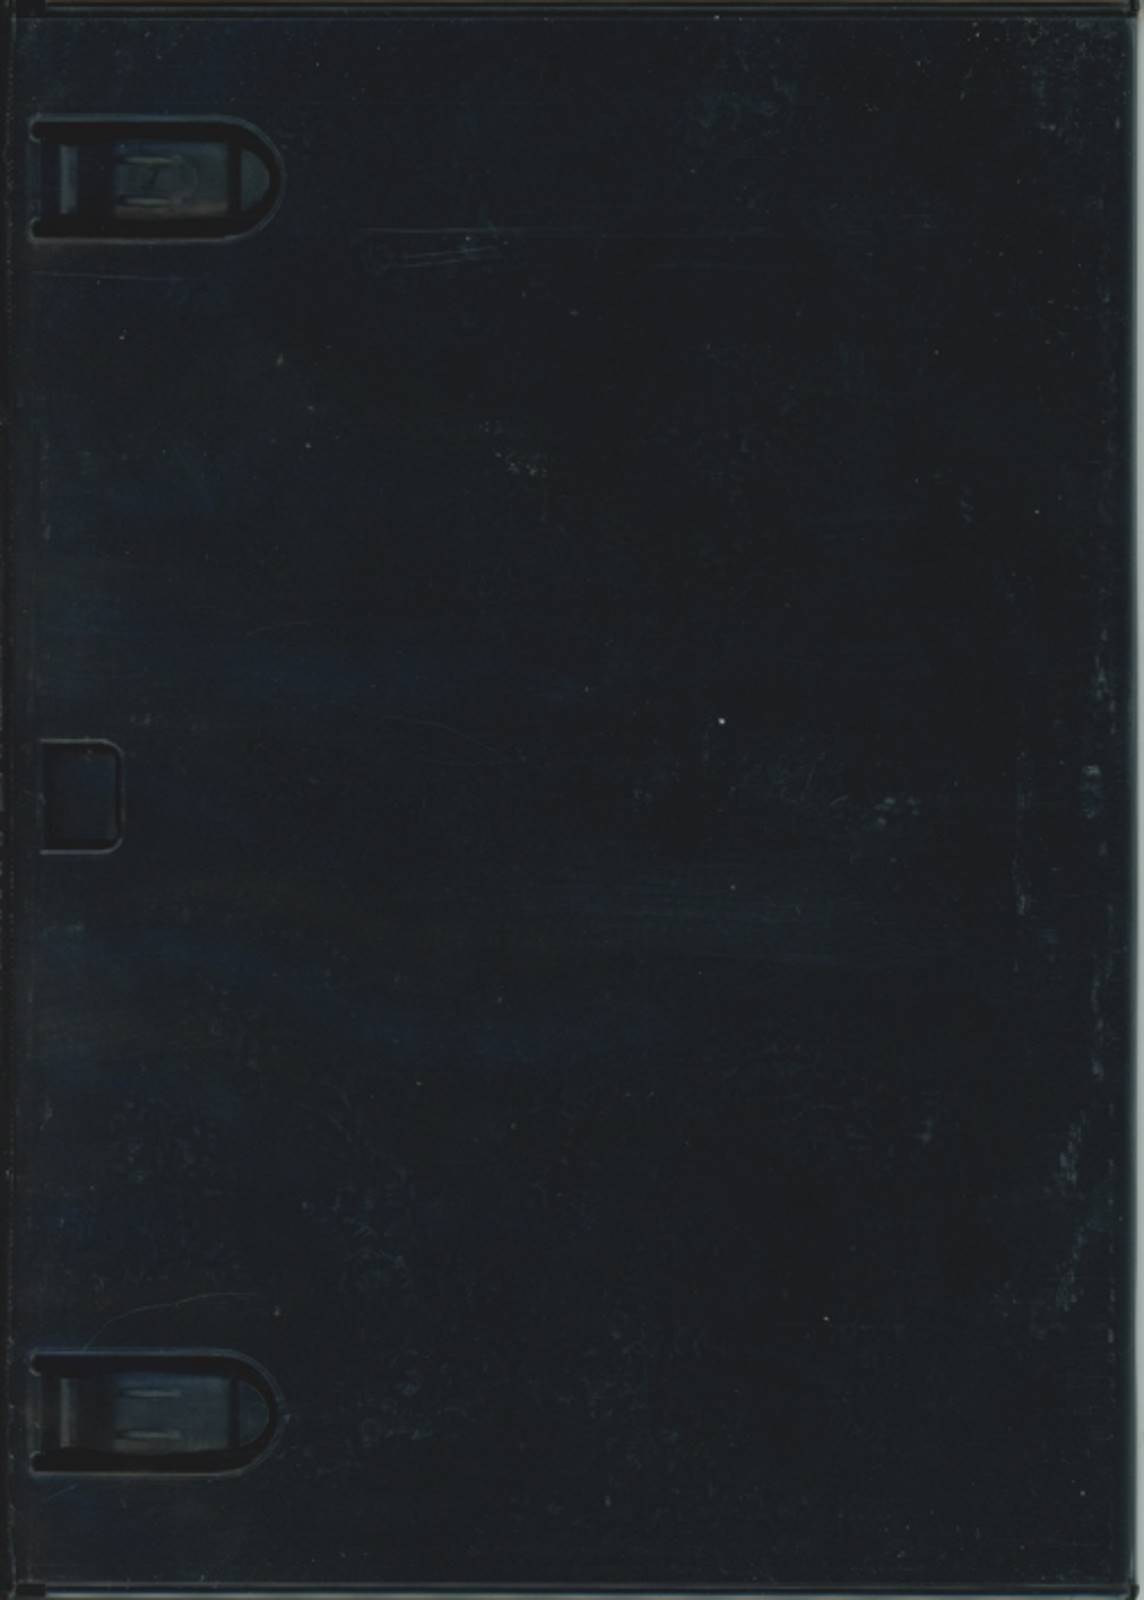 DVD Box, Hülle, Leerhülle, Variante 1, 6-fach, 190 x 135 x 14 mm, schwarz